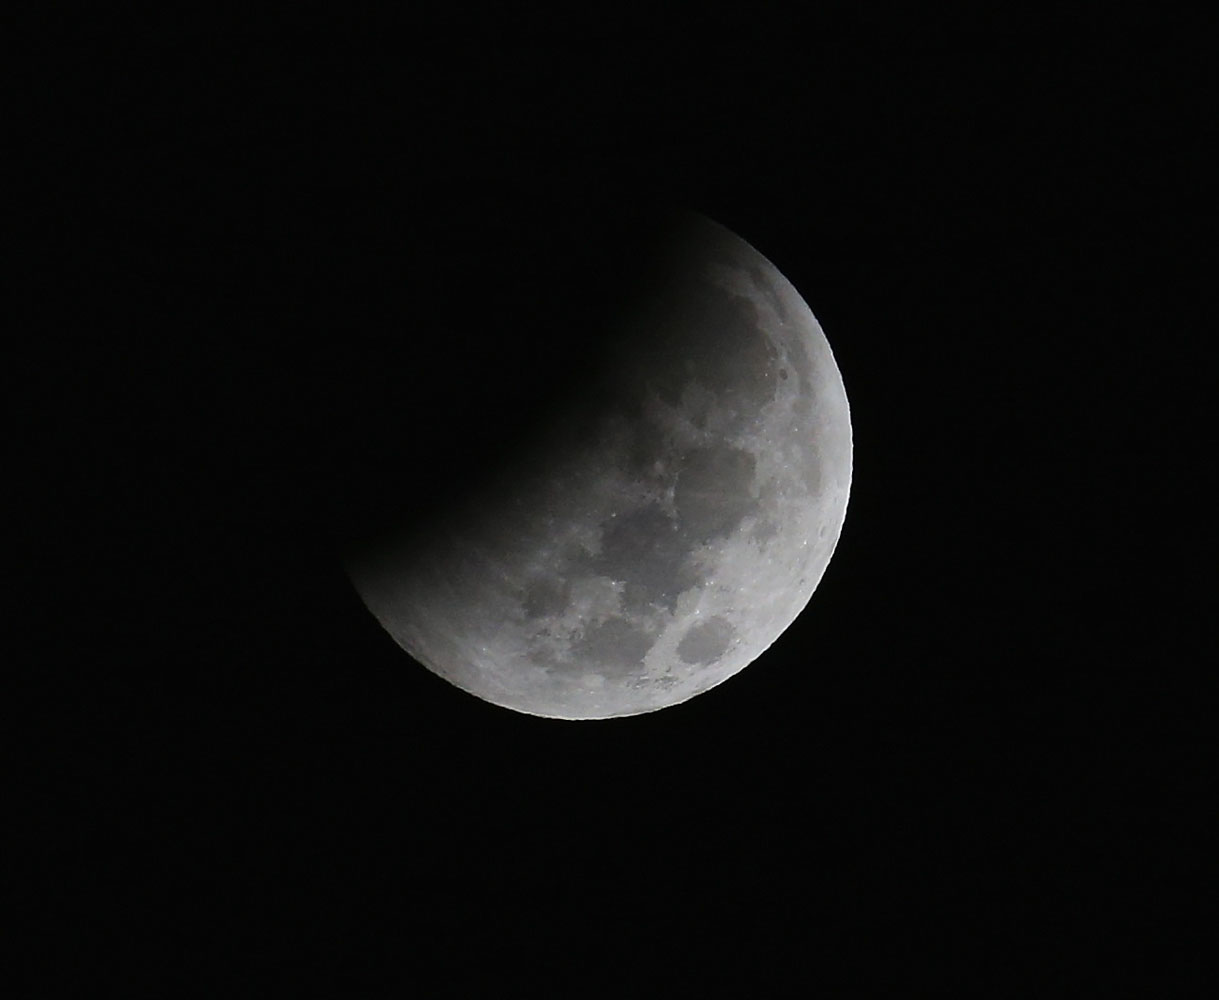 Breve eclipse lunar se observará el próximo 4 de abril en América del Norte